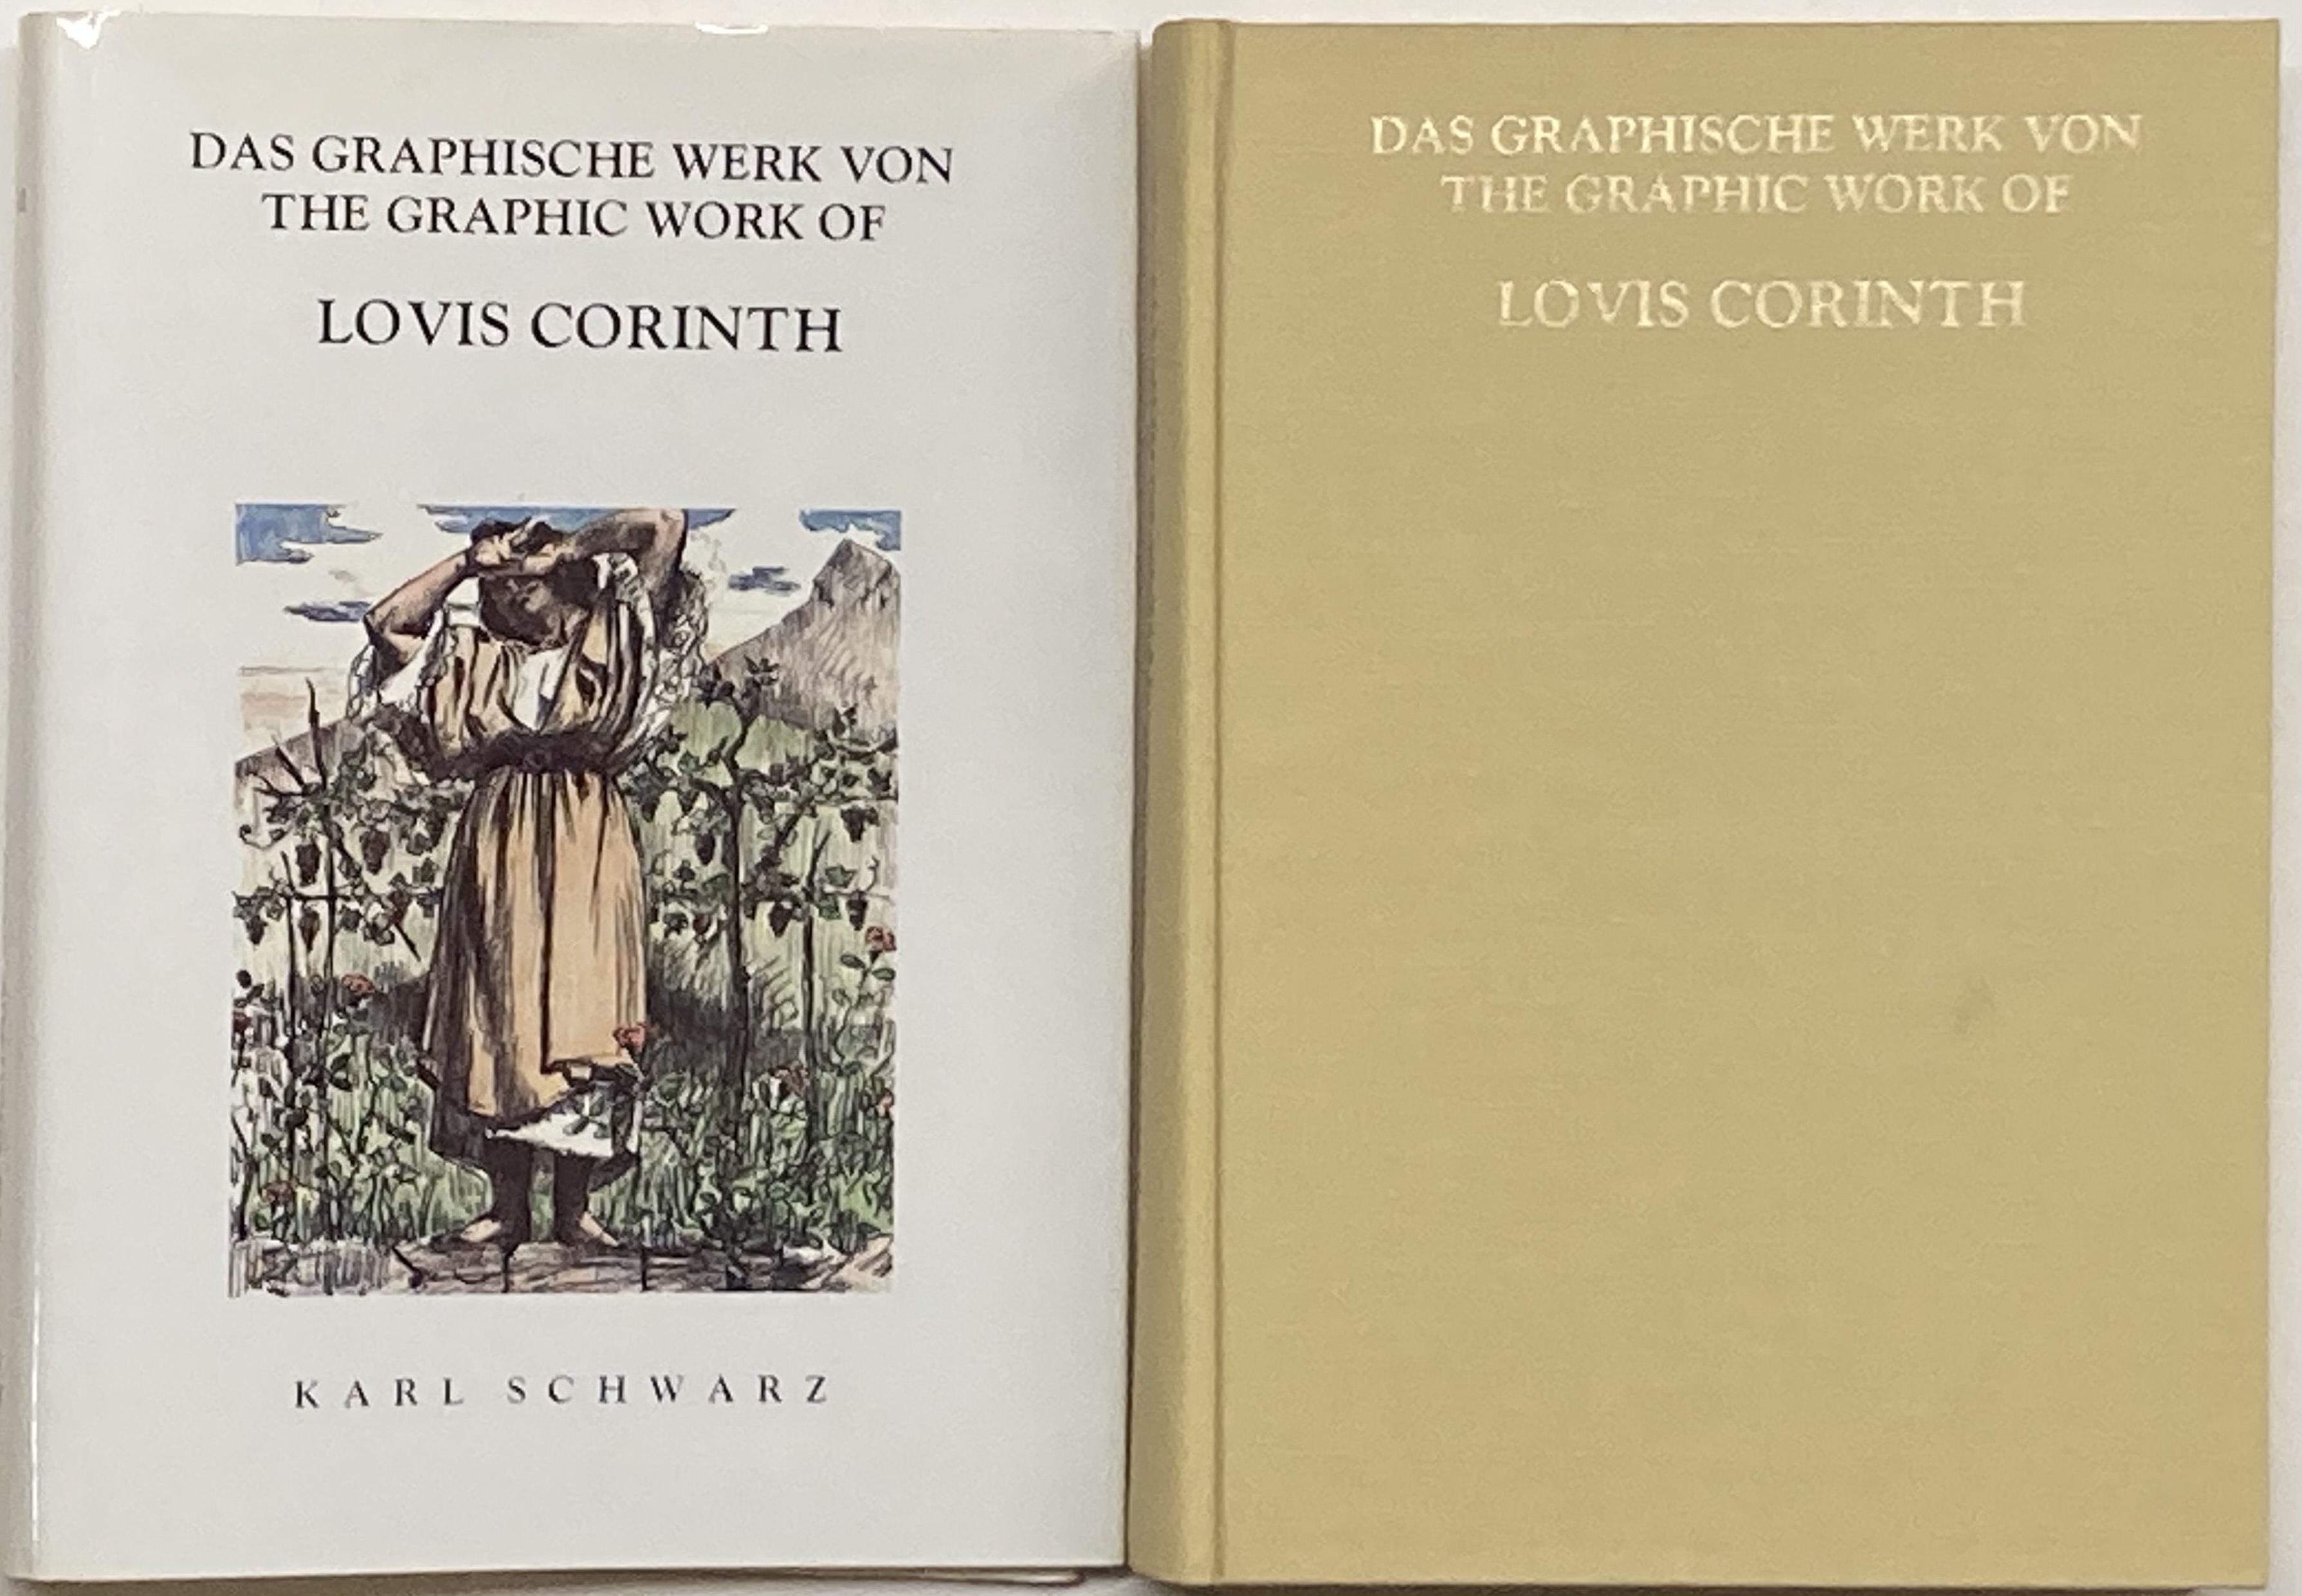 (Das Graphische Werk Von) The Graphic Work of Lovis Corinth [1891-1920] - Schwarz, Karl